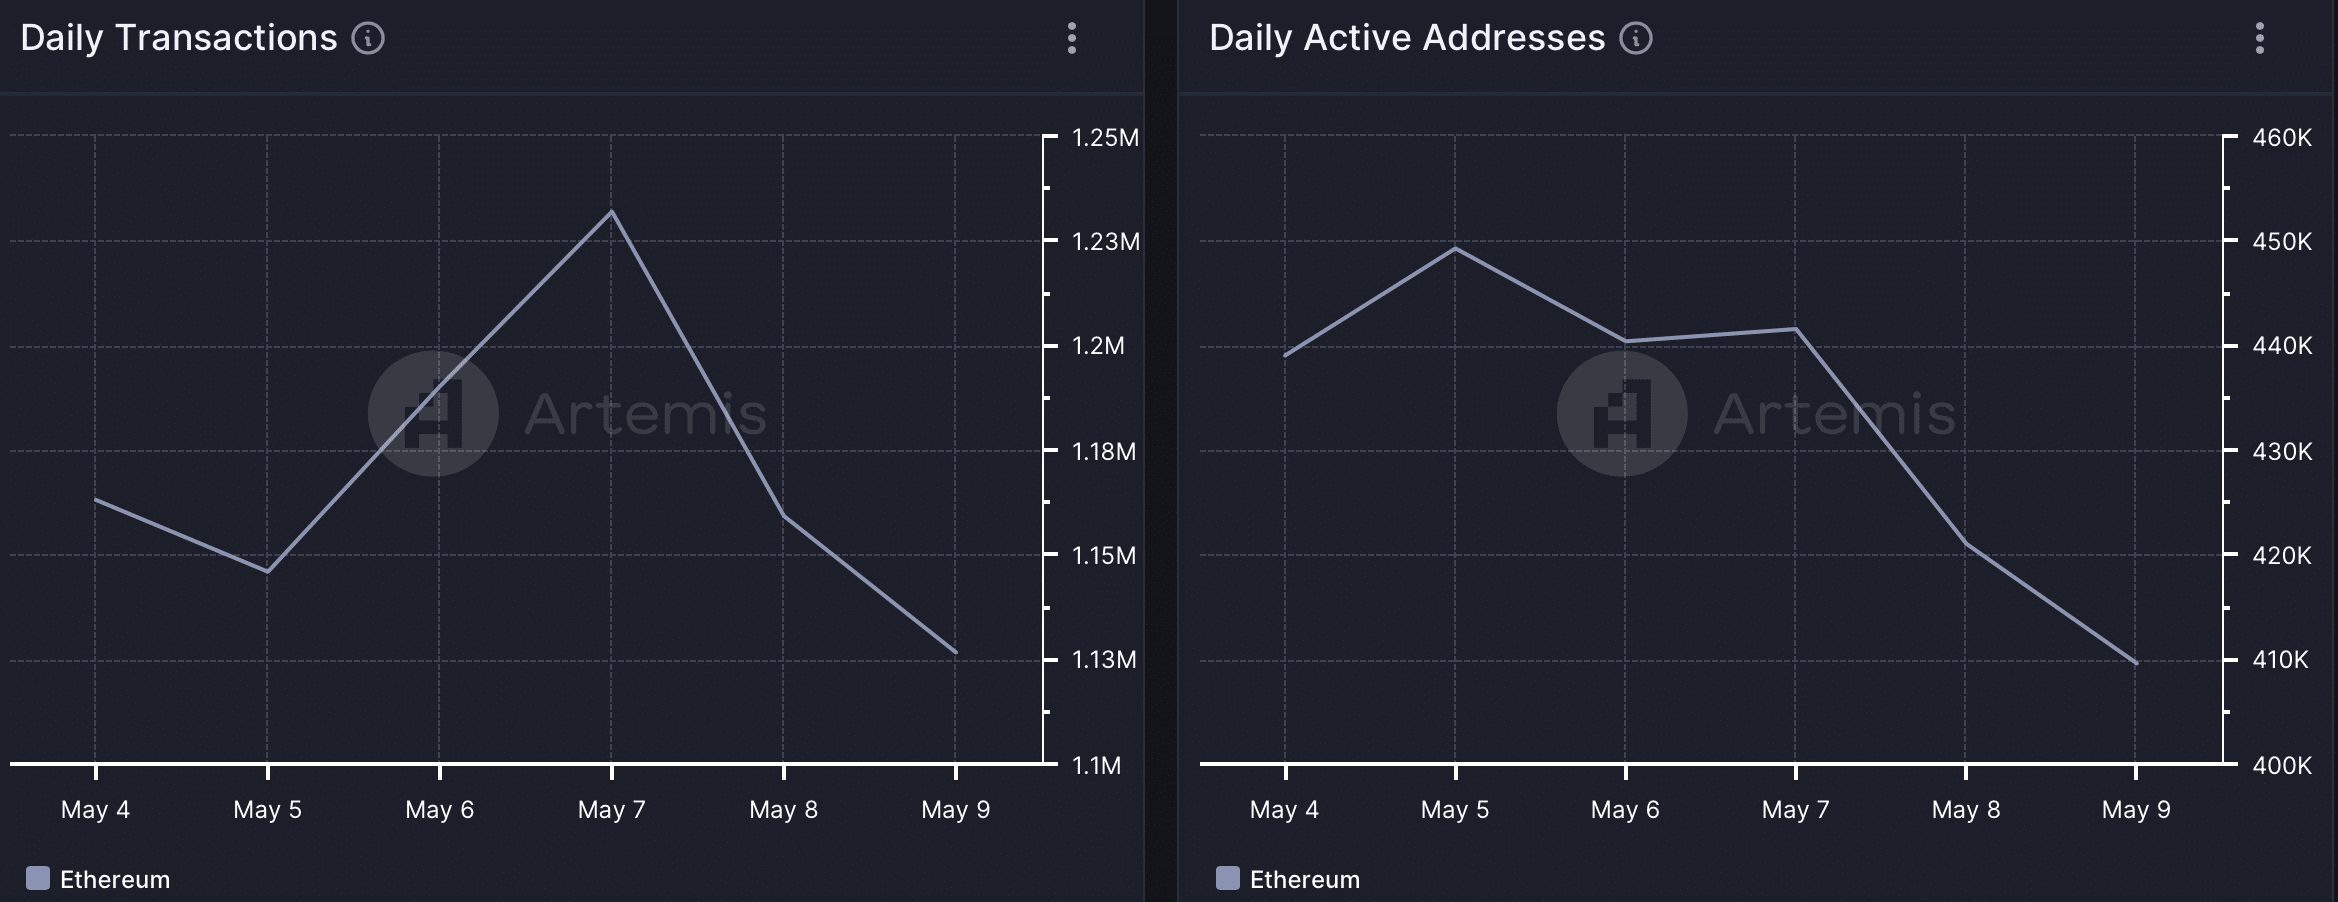 Las direcciones activas de Ethereum disminuyeron